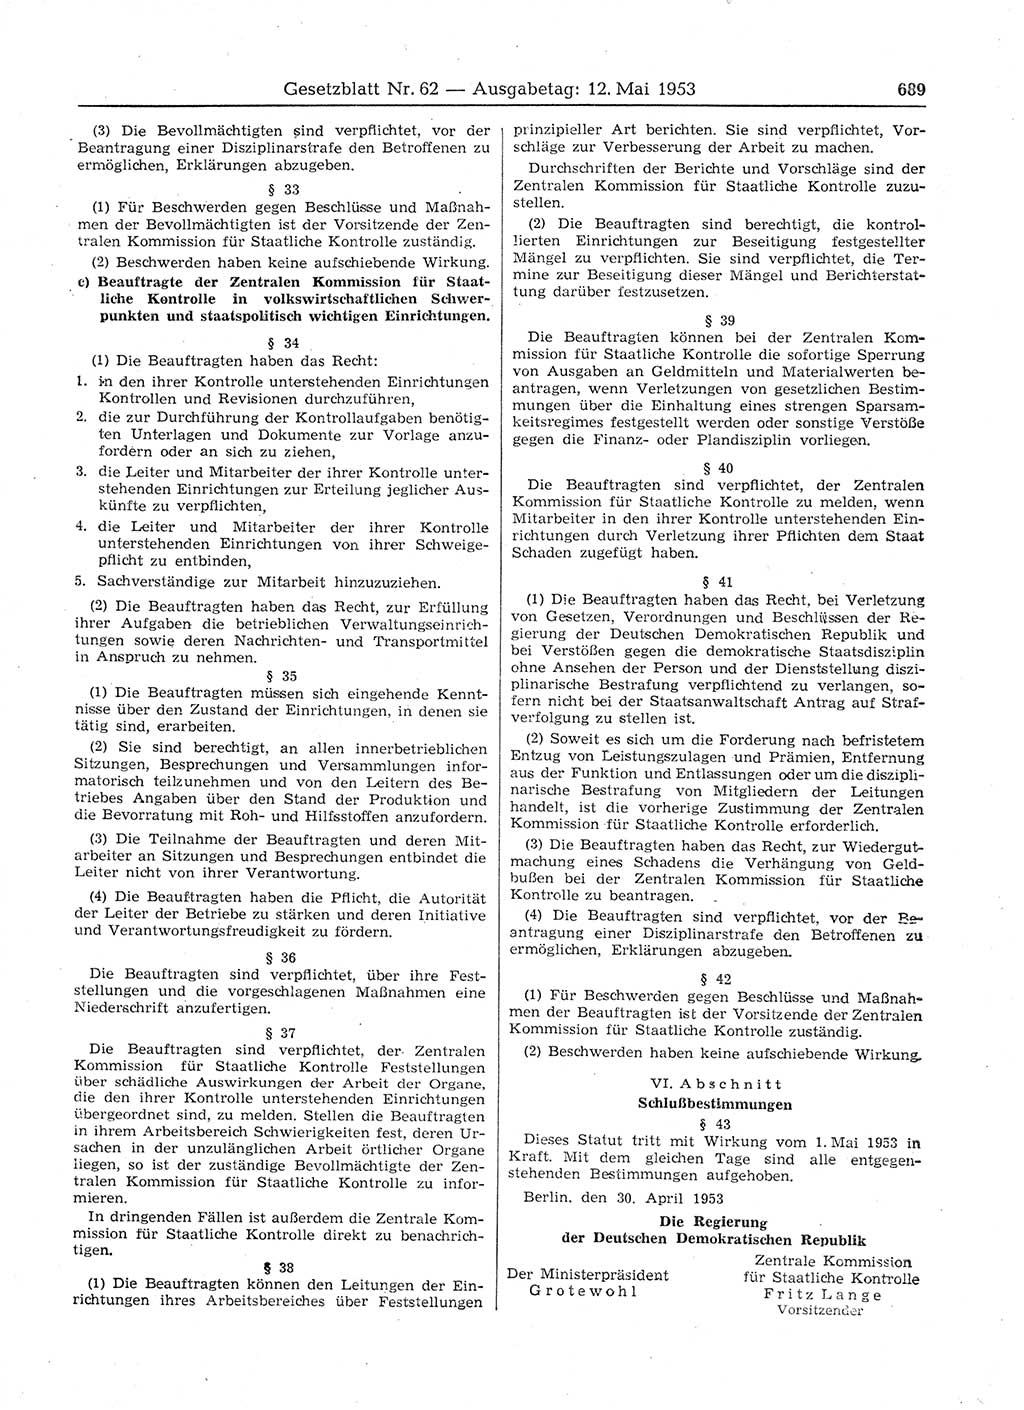 Gesetzblatt (GBl.) der Deutschen Demokratischen Republik (DDR) 1953, Seite 689 (GBl. DDR 1953, S. 689)